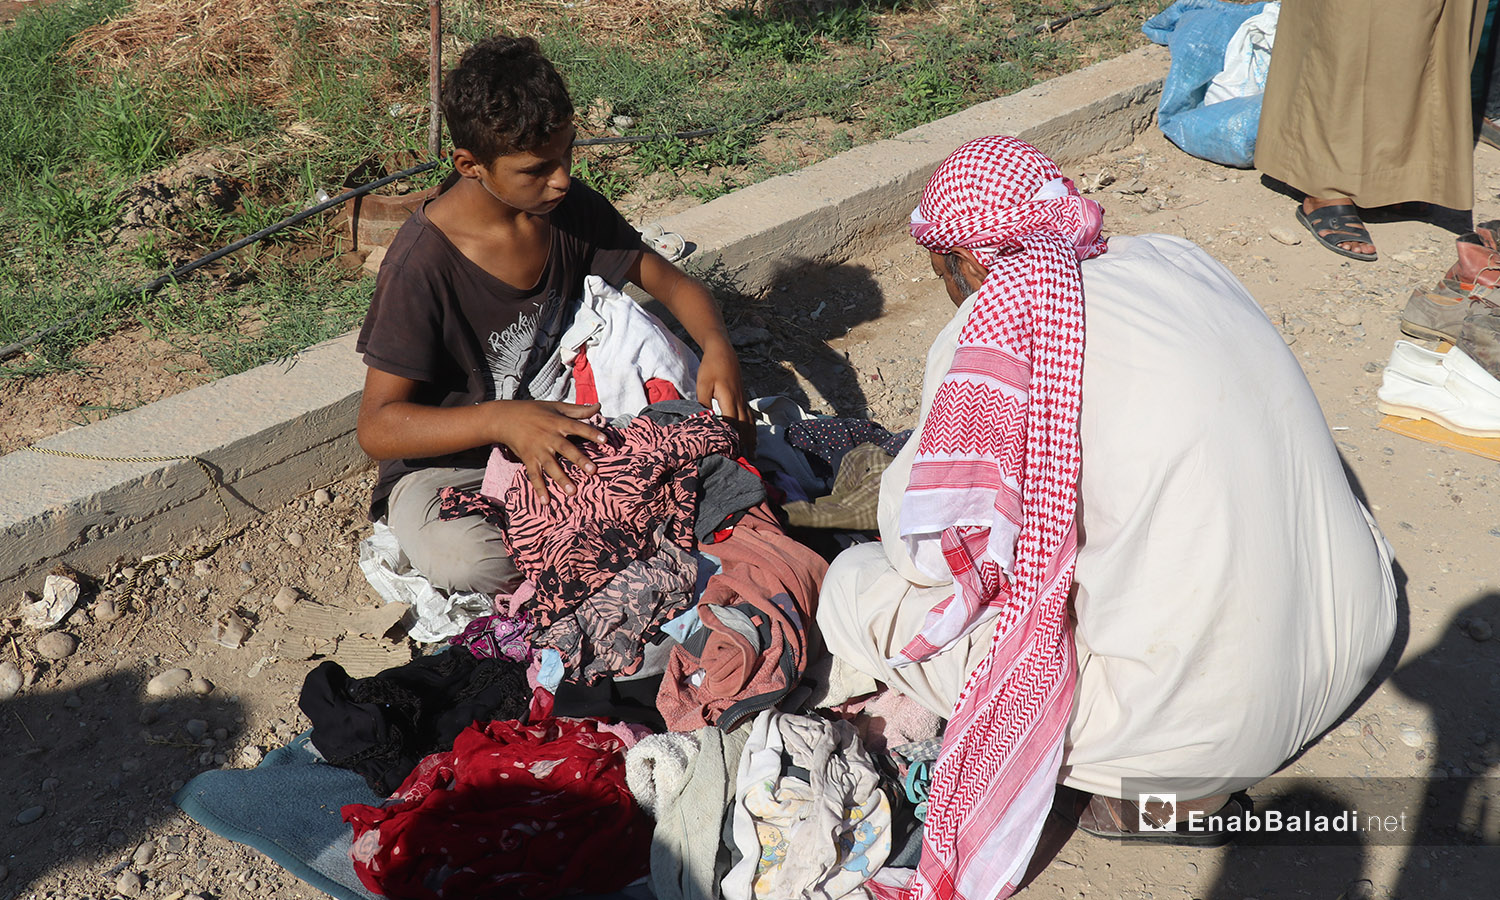 بسطة لبيع الثياب في سوق الجمعة بمدينة الرقة - 8 آب 2020 (عنب بلدي/عبد العزيز الصالح)